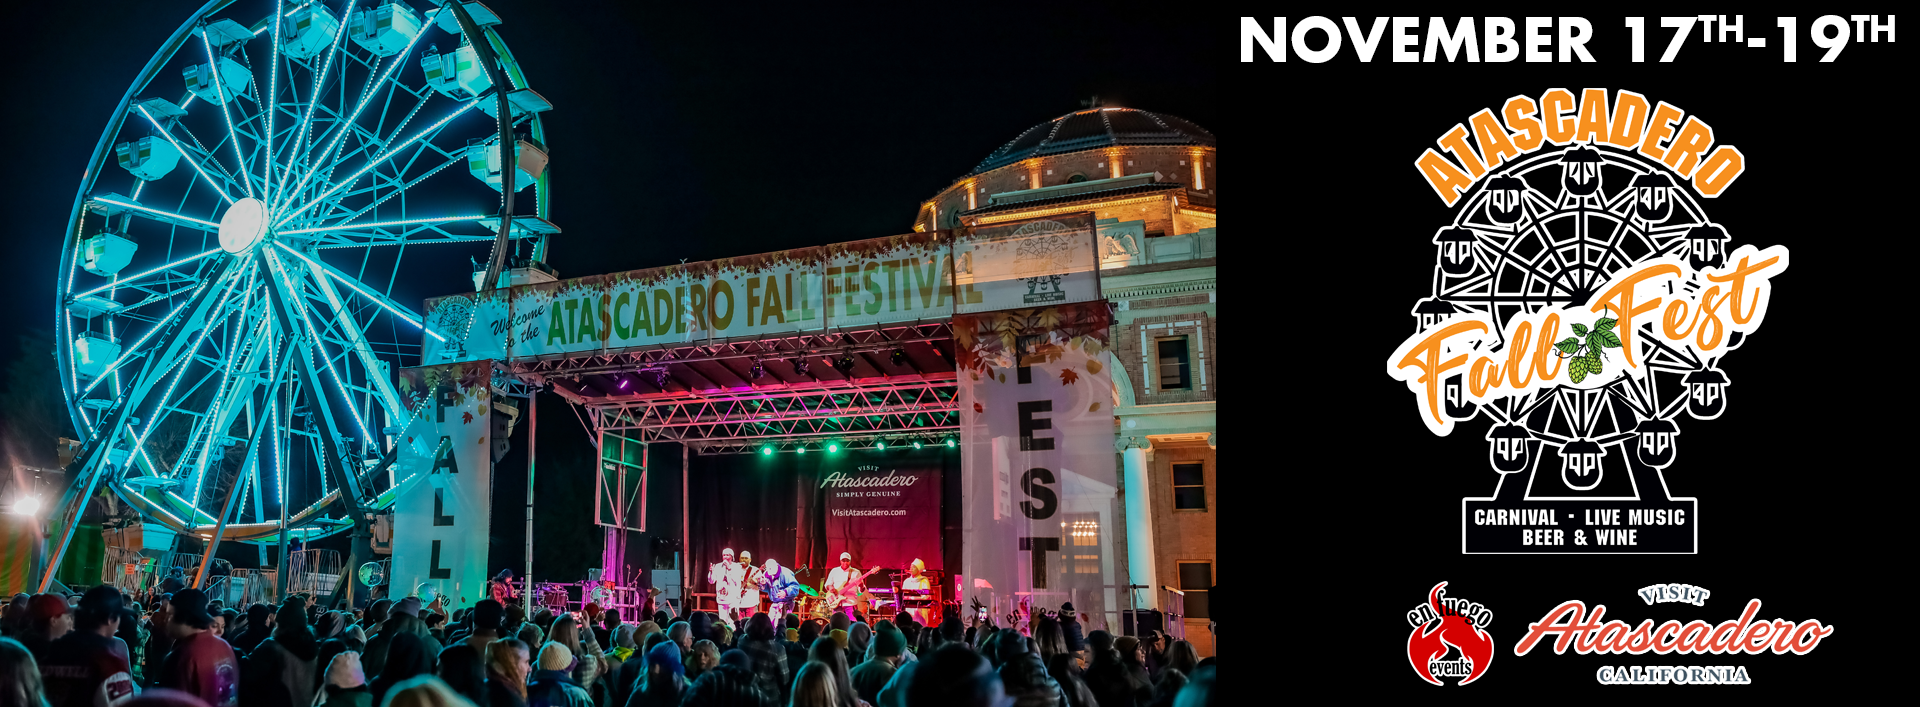 Atascadero Fall Festival 